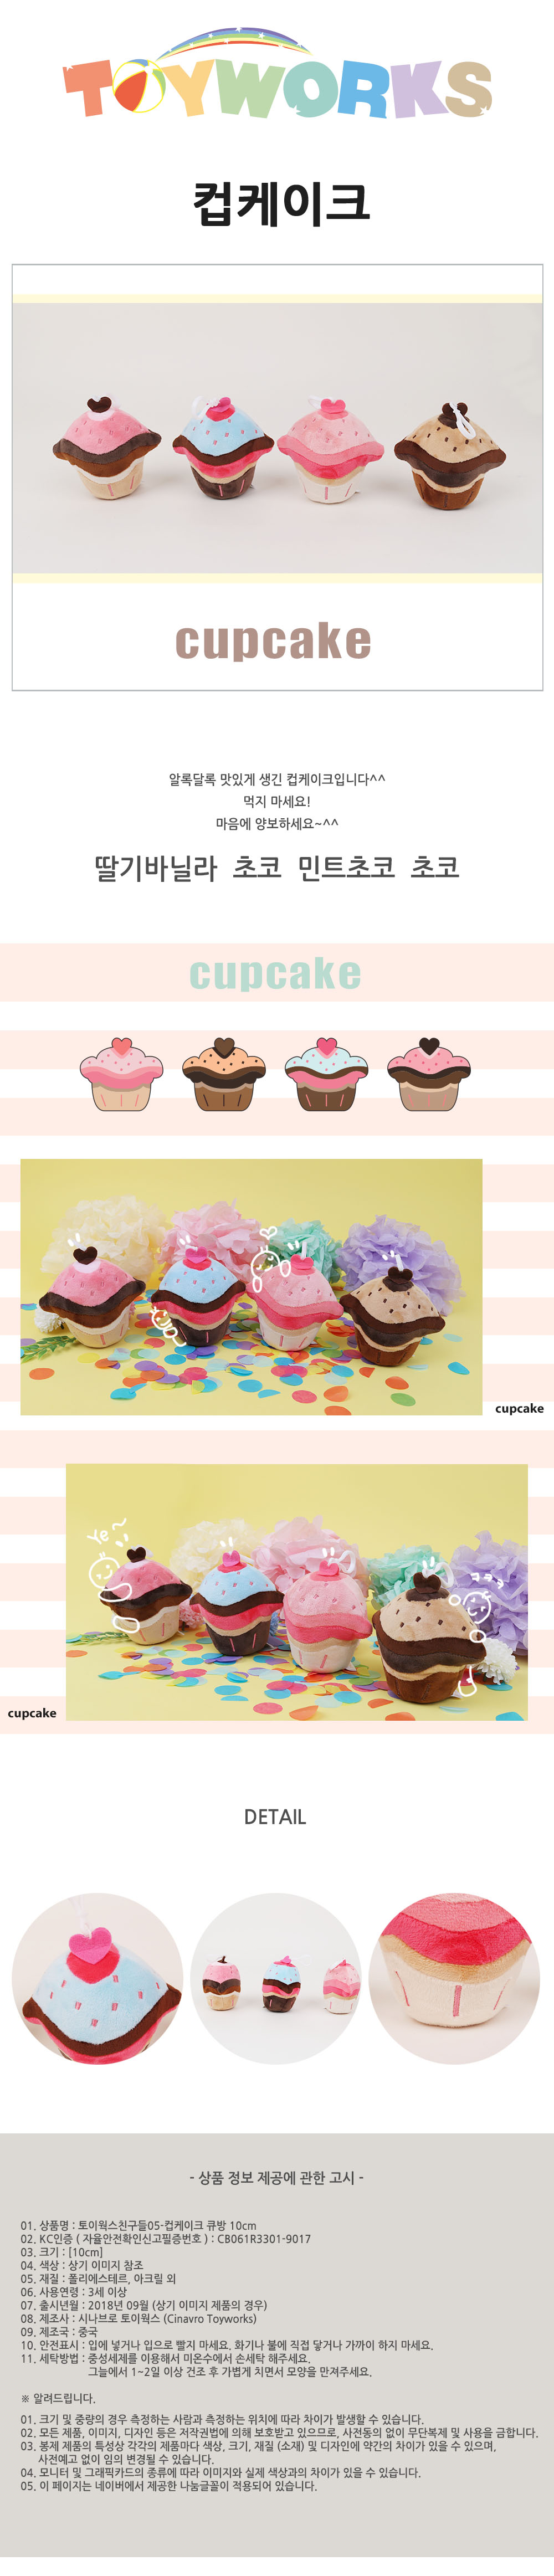 cupcake_000.jpg